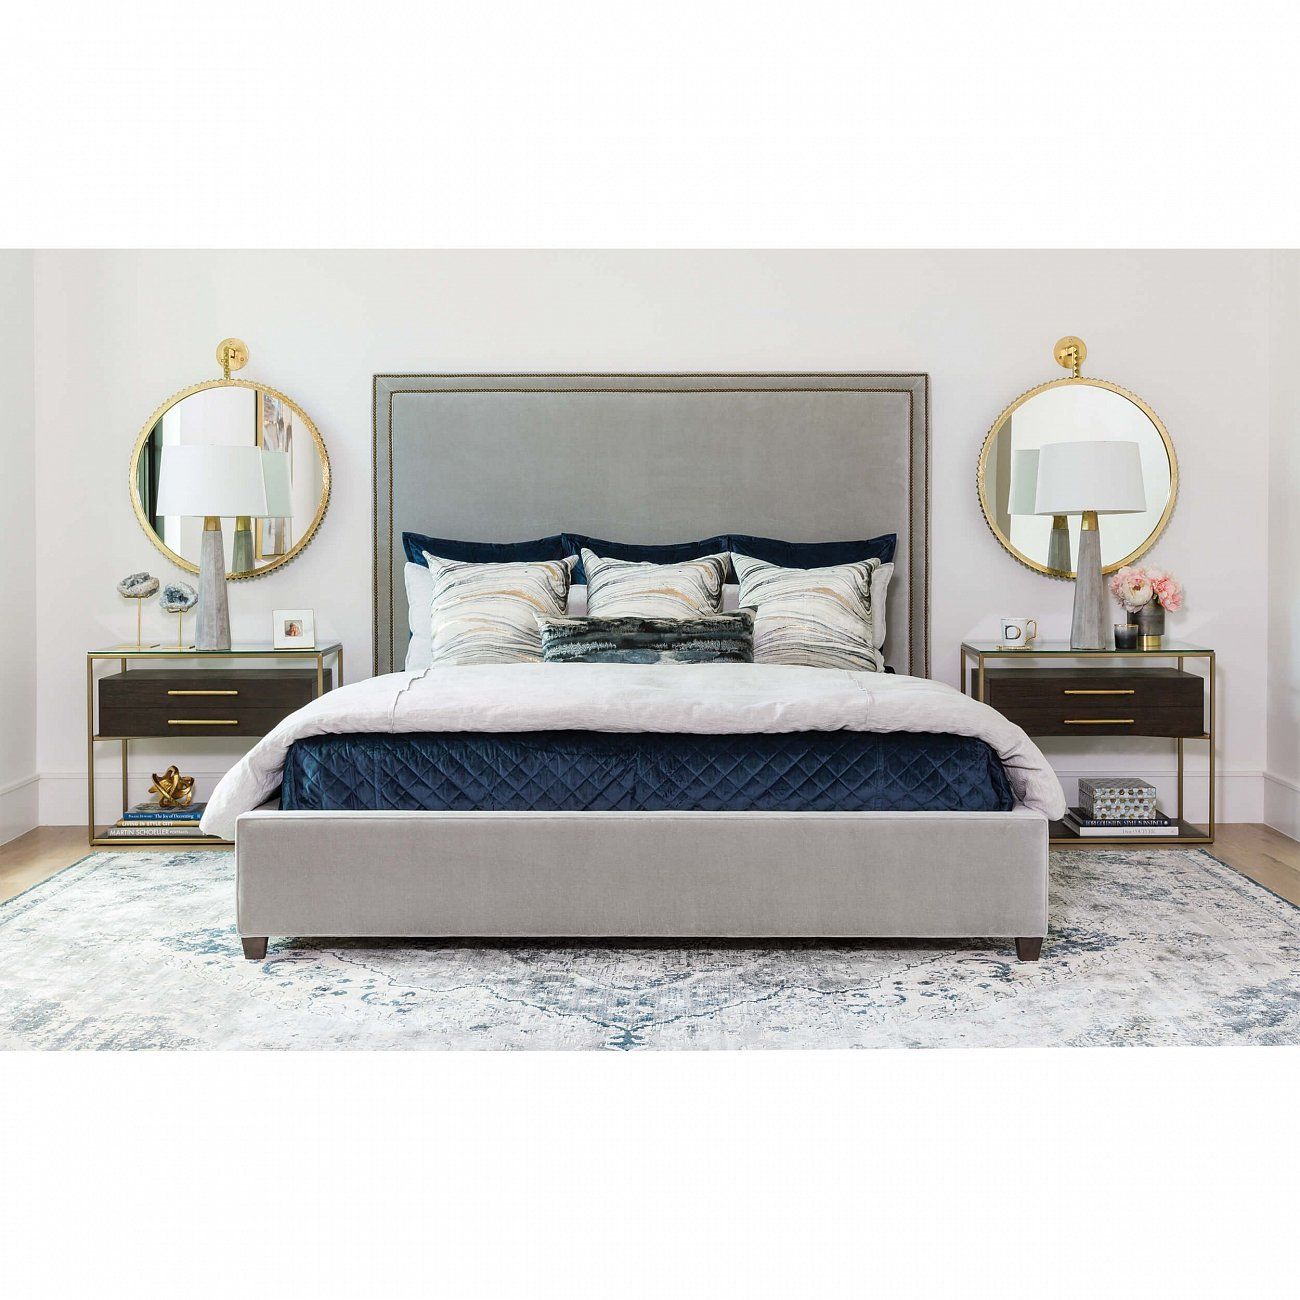 Double bed 160x200 cm gray Dakota